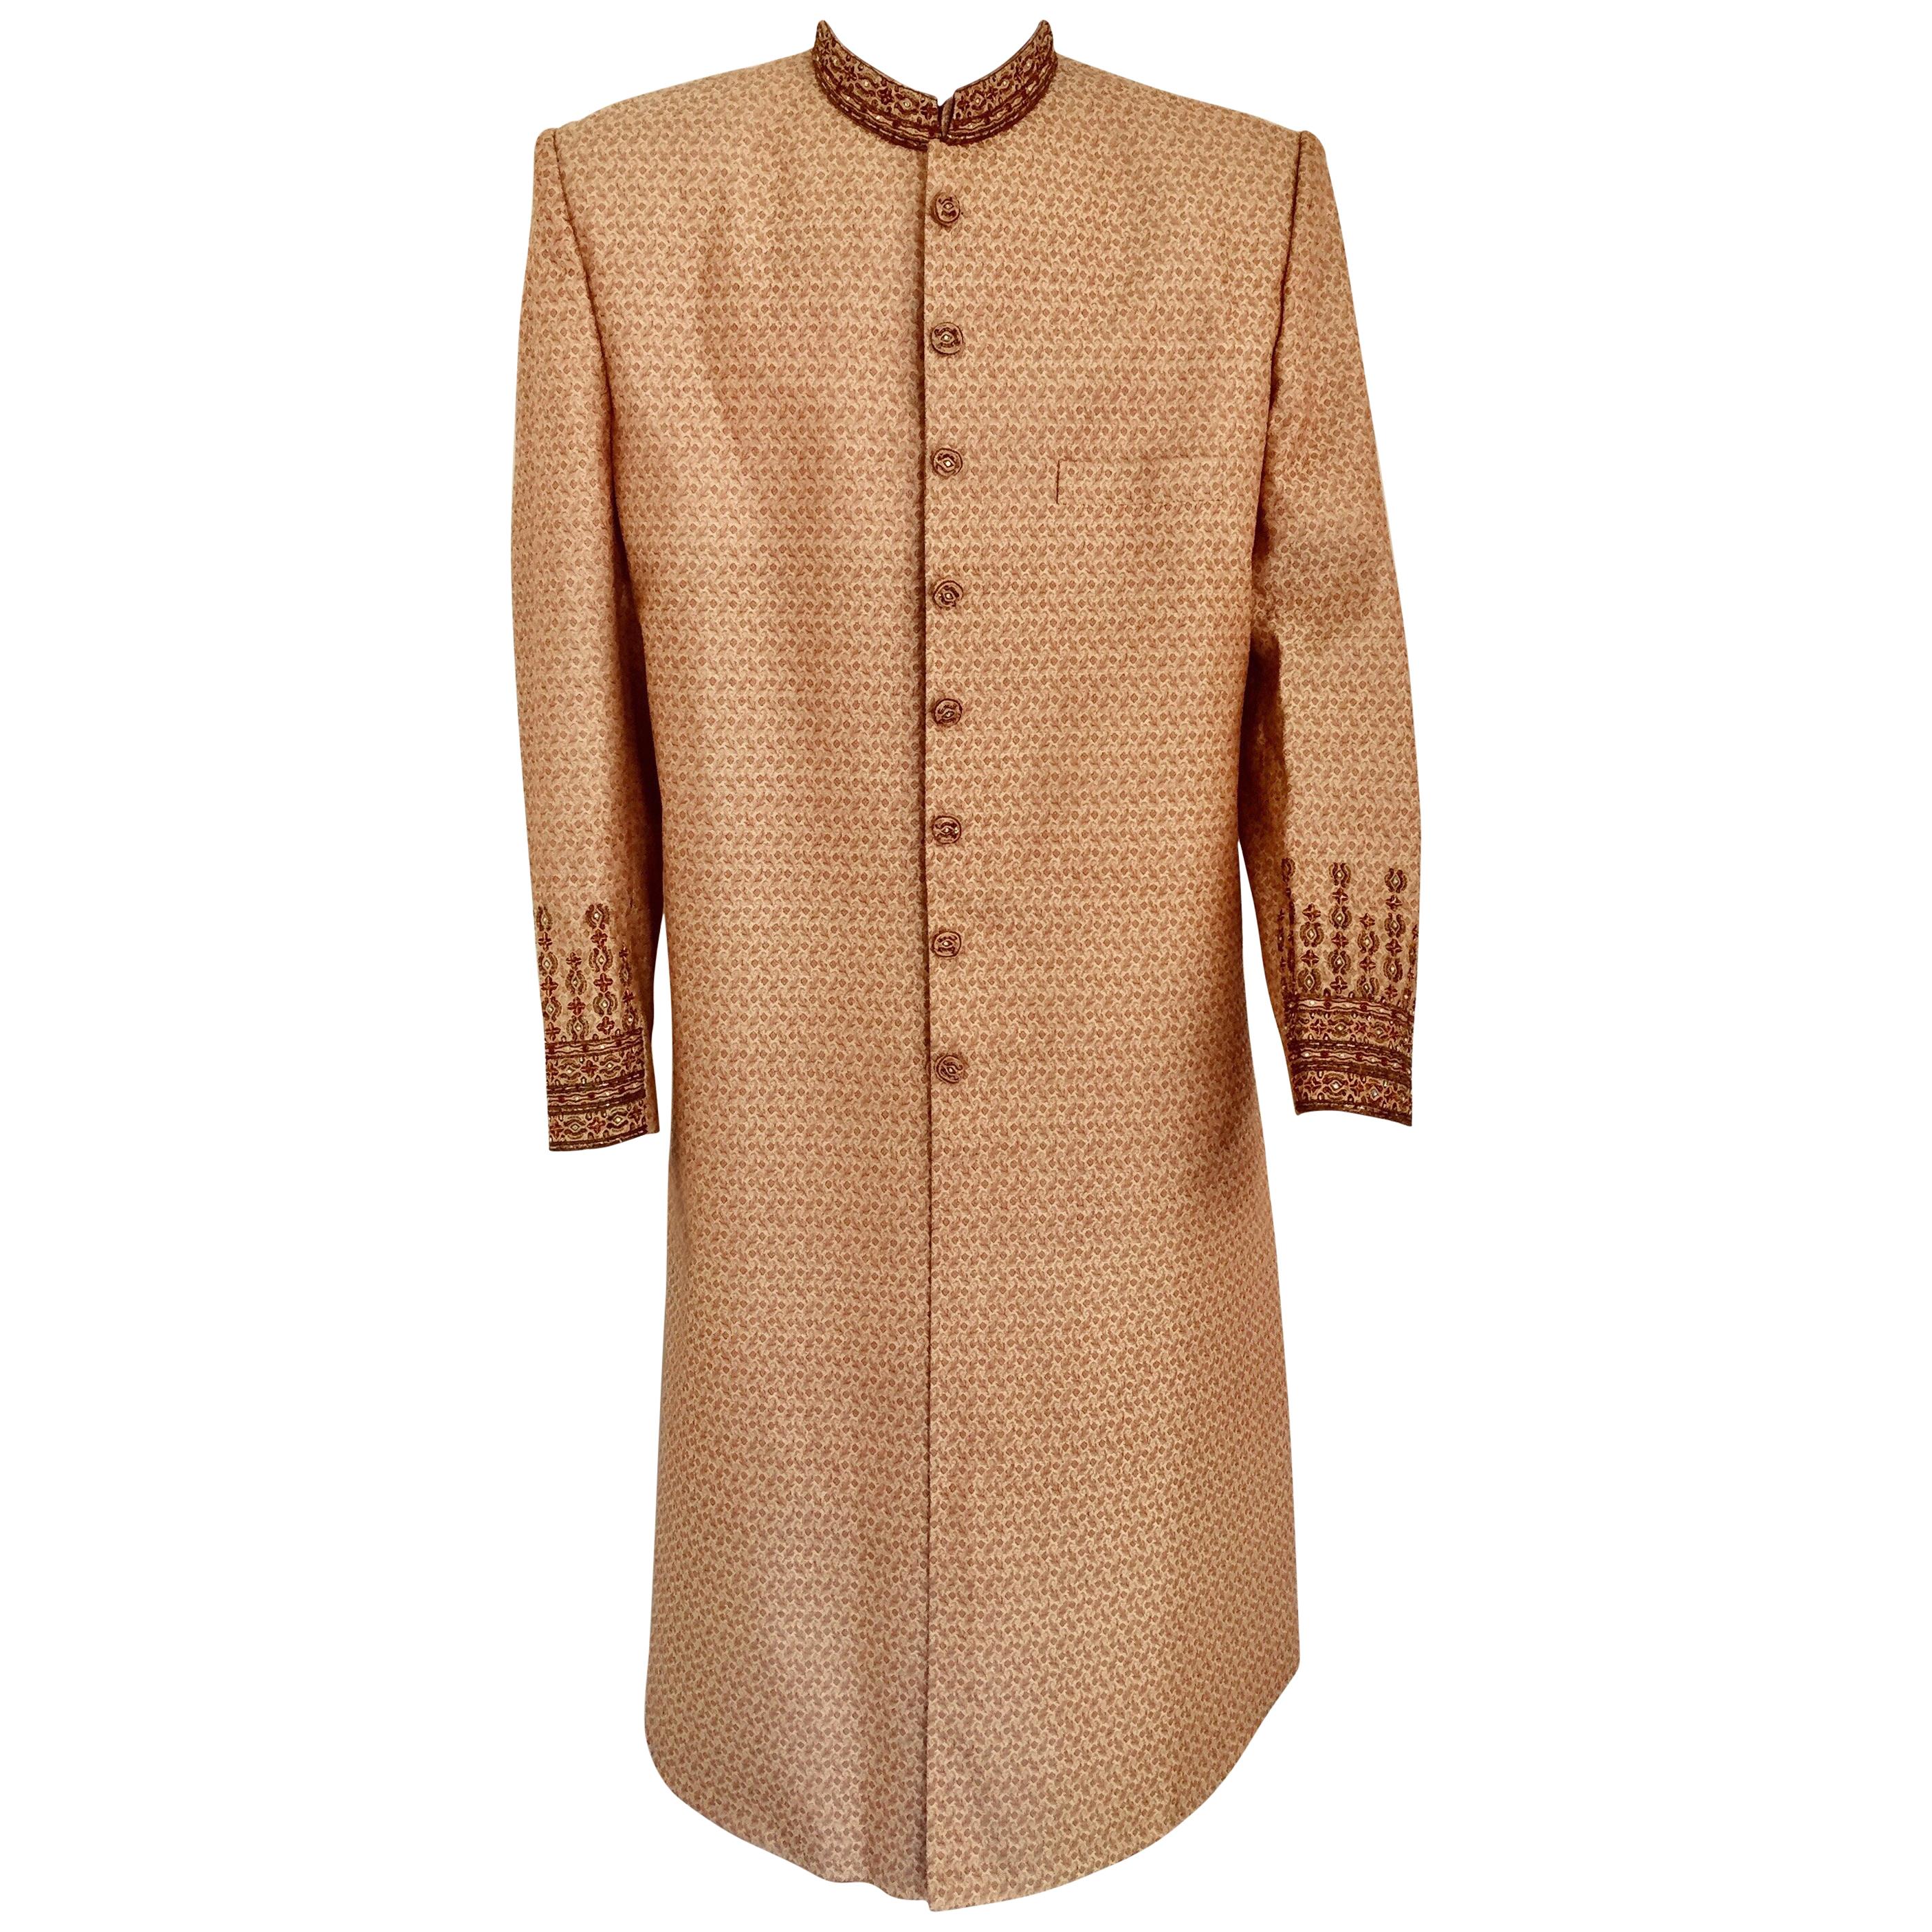 Gold Brocade Gentleman Indian Wedding or Party Maharaja Sultan Tuxedo Coat For Sale